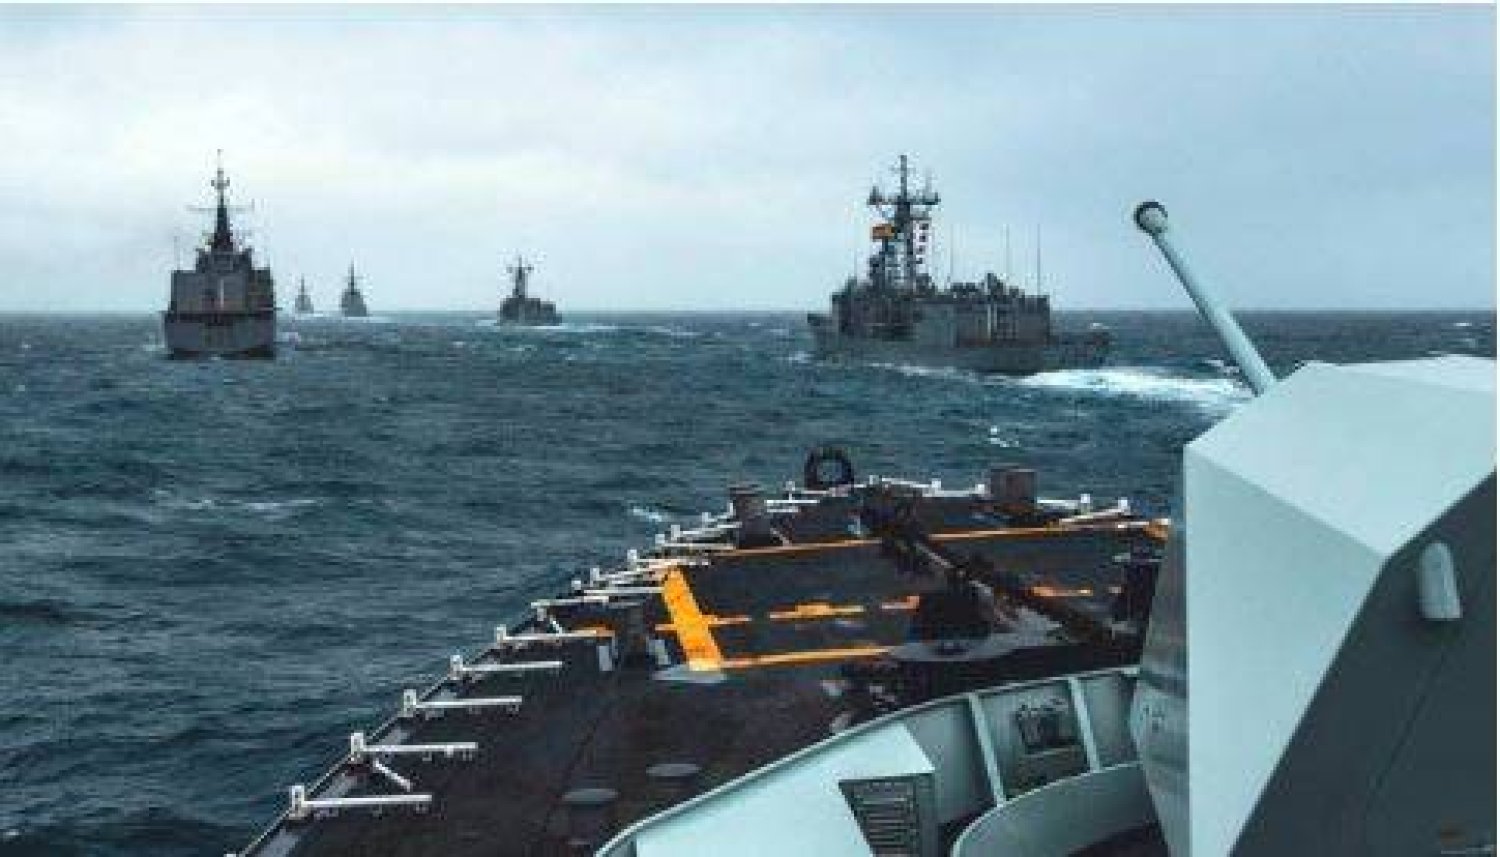 سفينة «إتش إم سي إس شارلوت تاون» تبحر جنباً إلى جنب مع سفن الحلفاء في القناة الإنجليزية أثناء تمرين «الحرس الديناميكي 24» (الناتو)